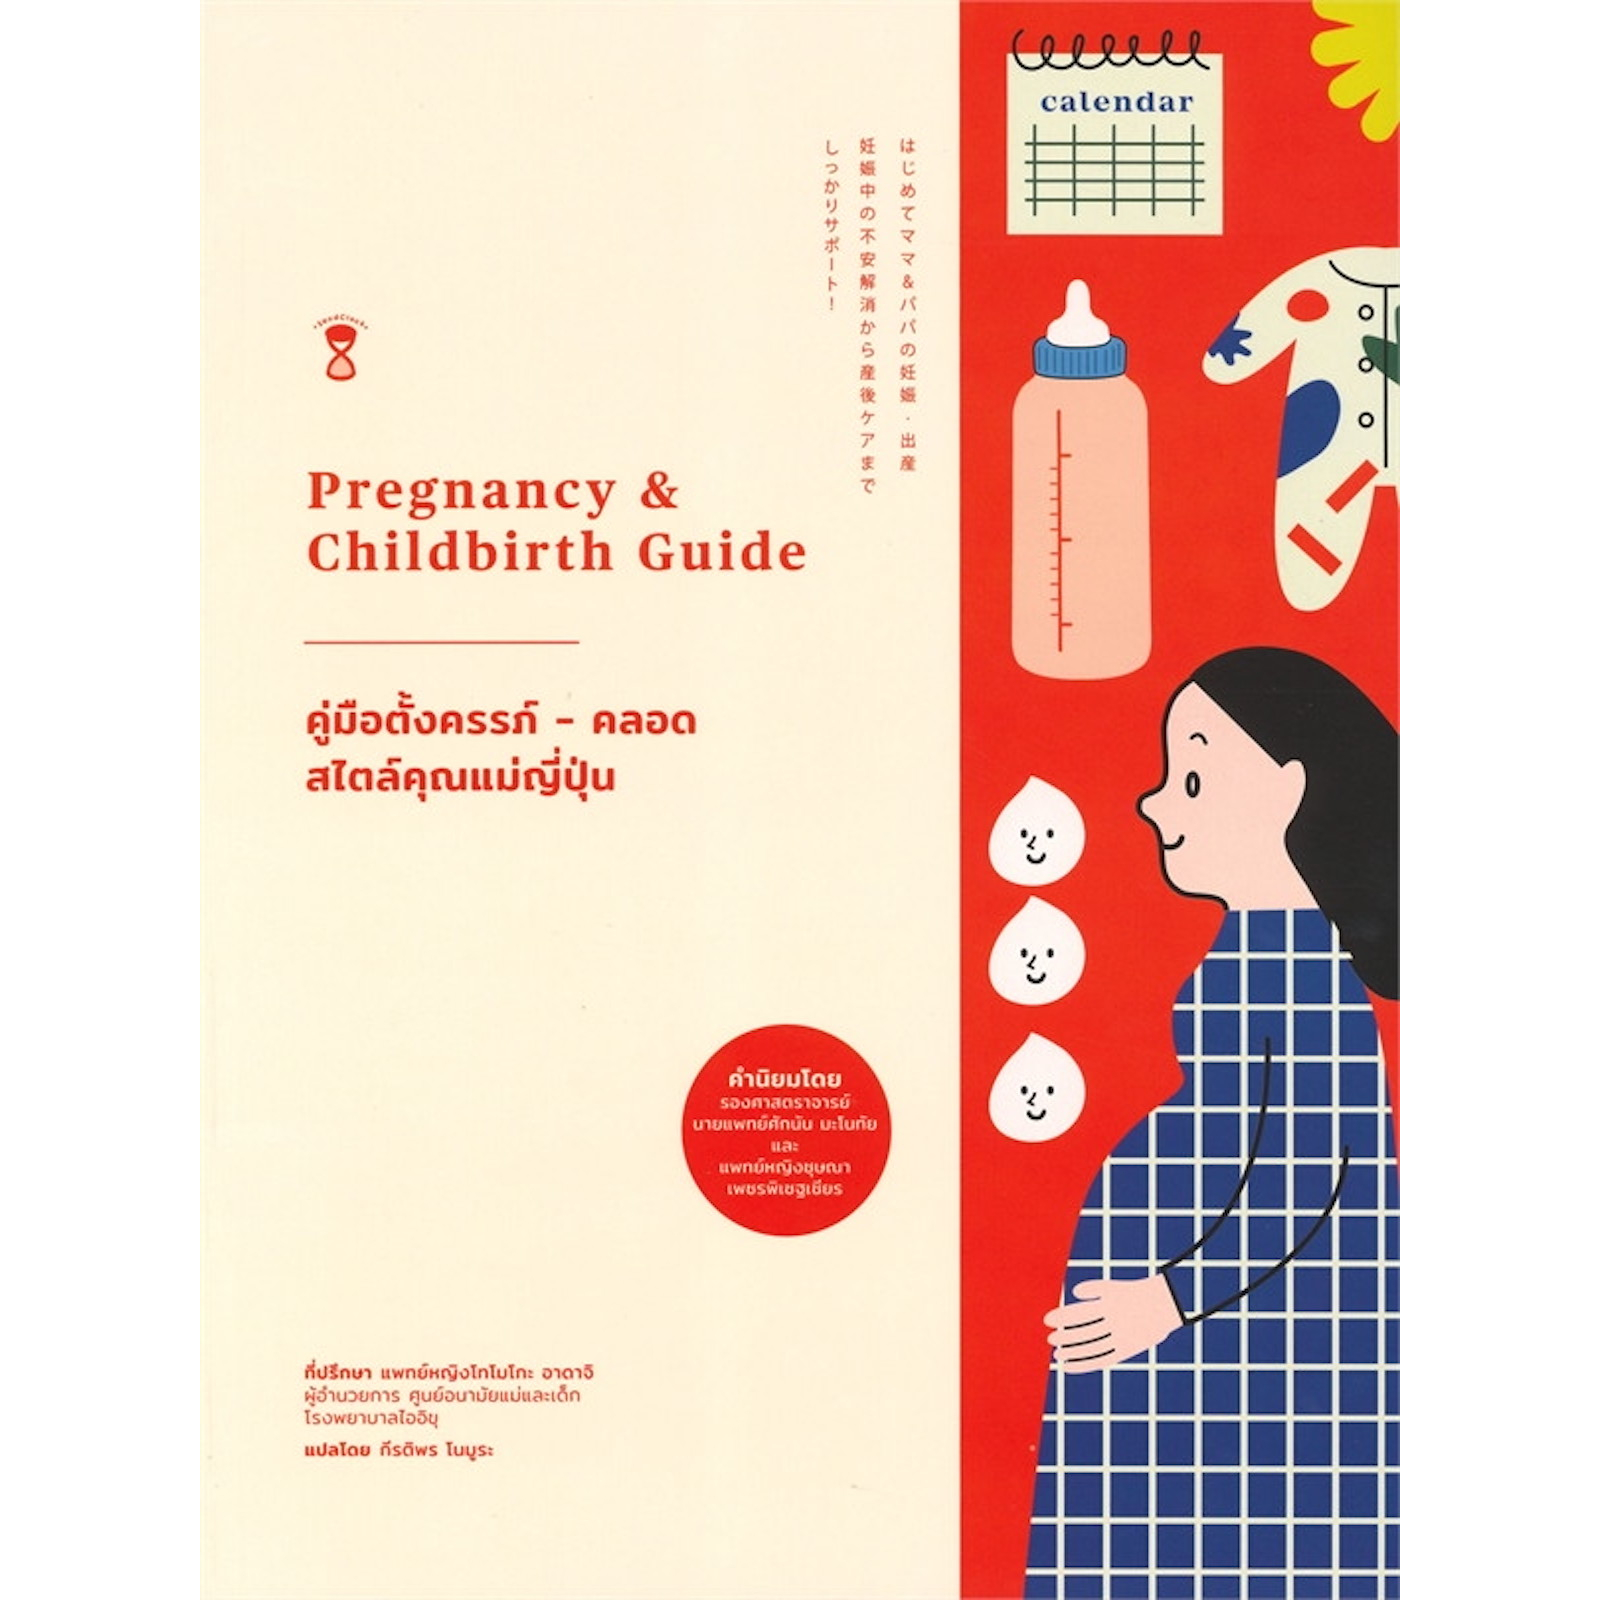 หนังสือ-คู่มือตั้งครรภ์-คลอด-สไตล์คุณแม่ญี่ปุ่น-รวมทุกเรื่องที่คุณอยากรู้เมื่อตั้งครรภ์-ระดับพื้นฐานในการใช้ชีวิต